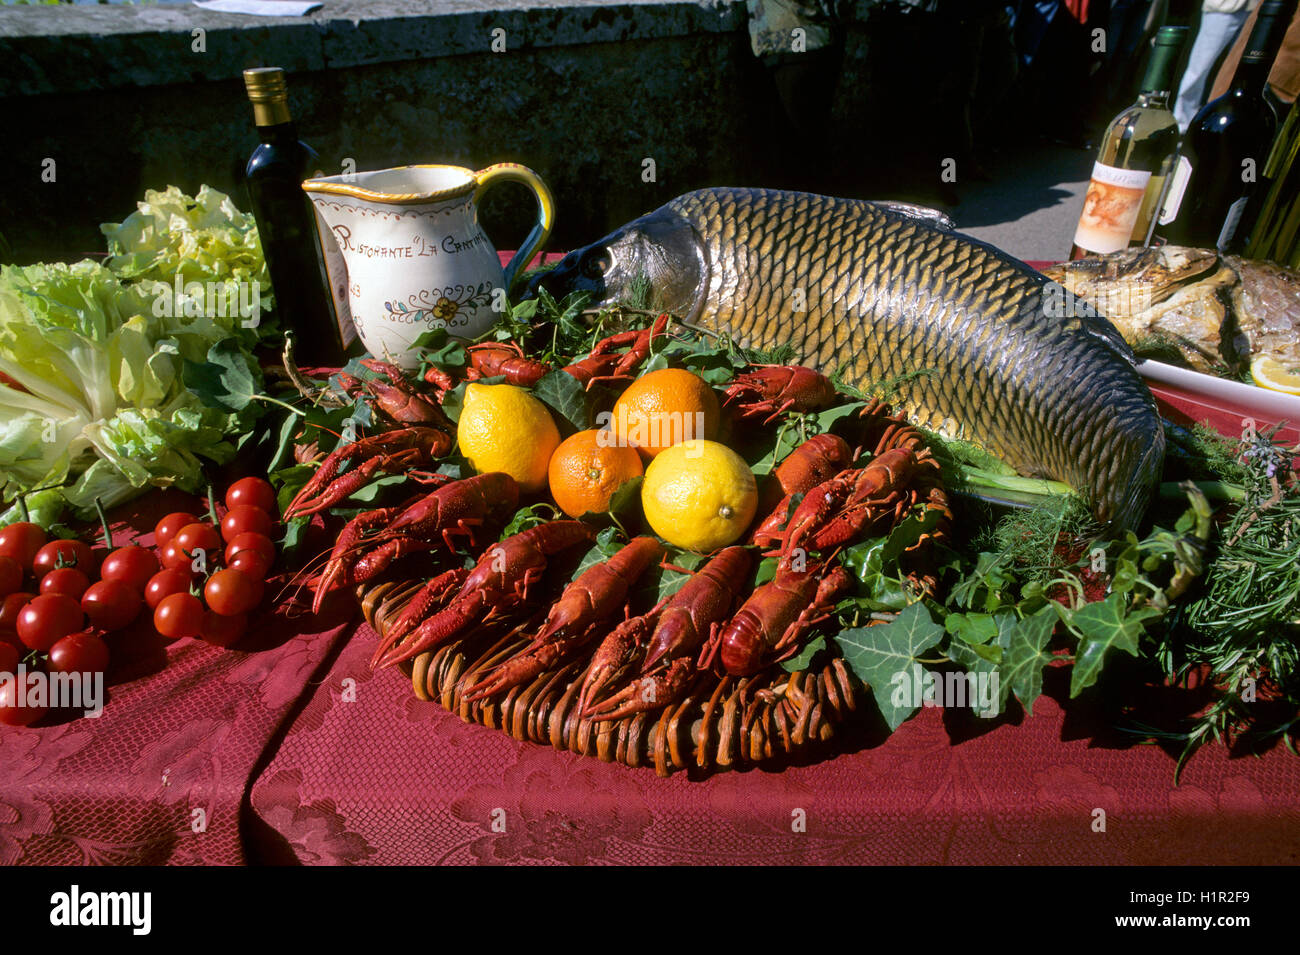 Louisiana Red astaci (Procambarus clarkii) e comuni carpa (Cyprinus carpio) per display, Castiglione del Lago, Umbria Foto Stock